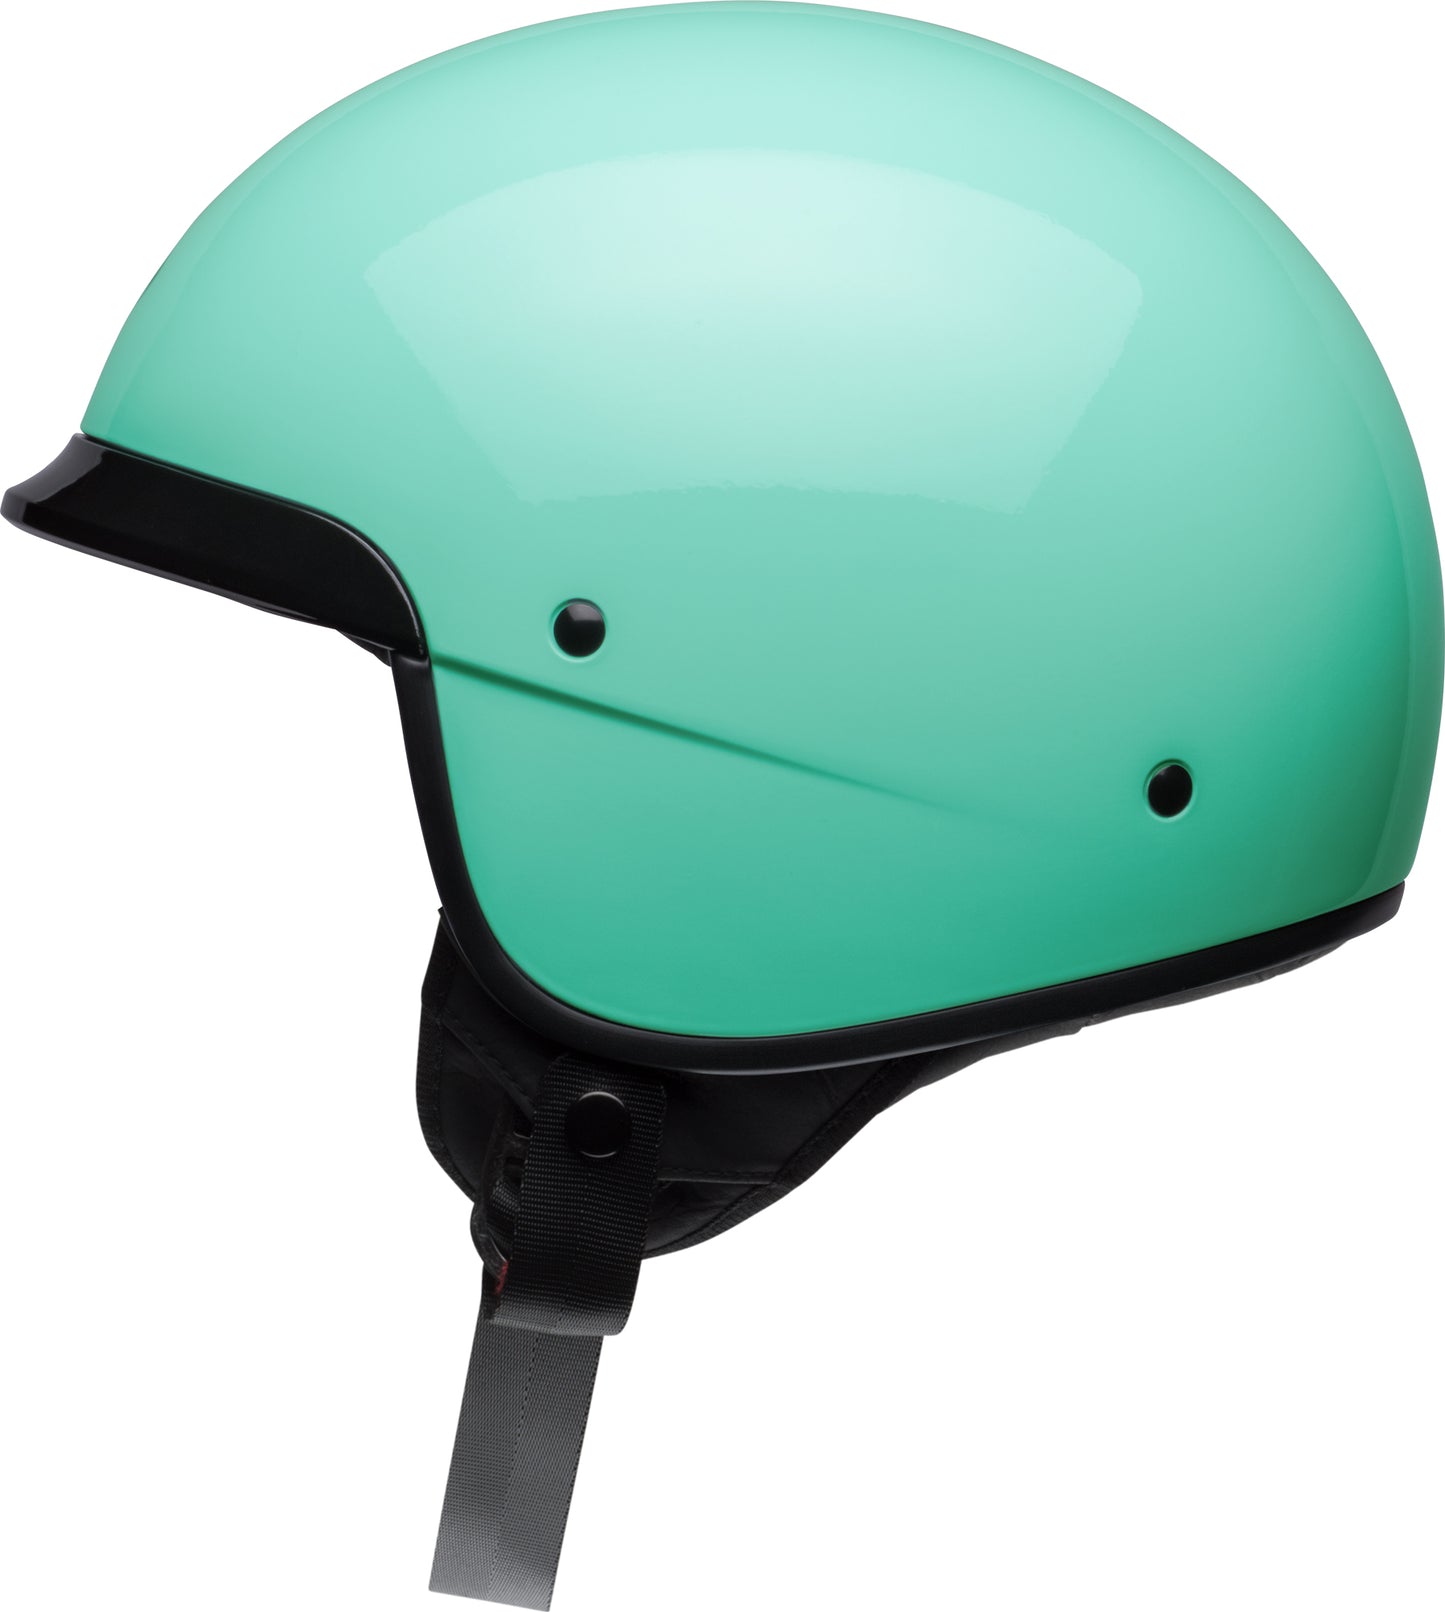 Bell Helmet Scout Air (Mint Green)